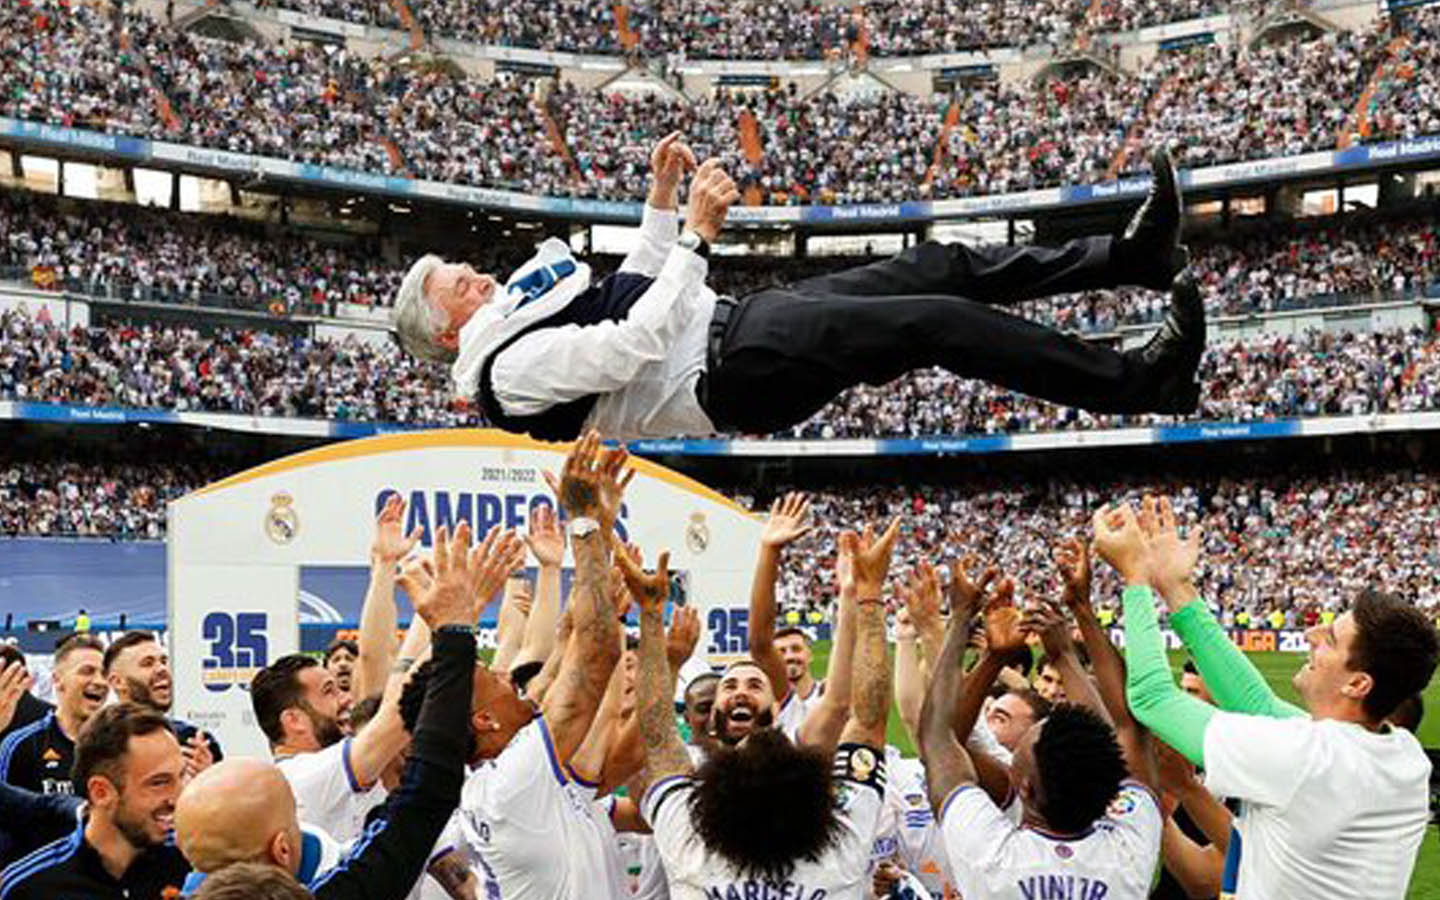 Carlo Ancelotti Bawa Real Madrid Juara!